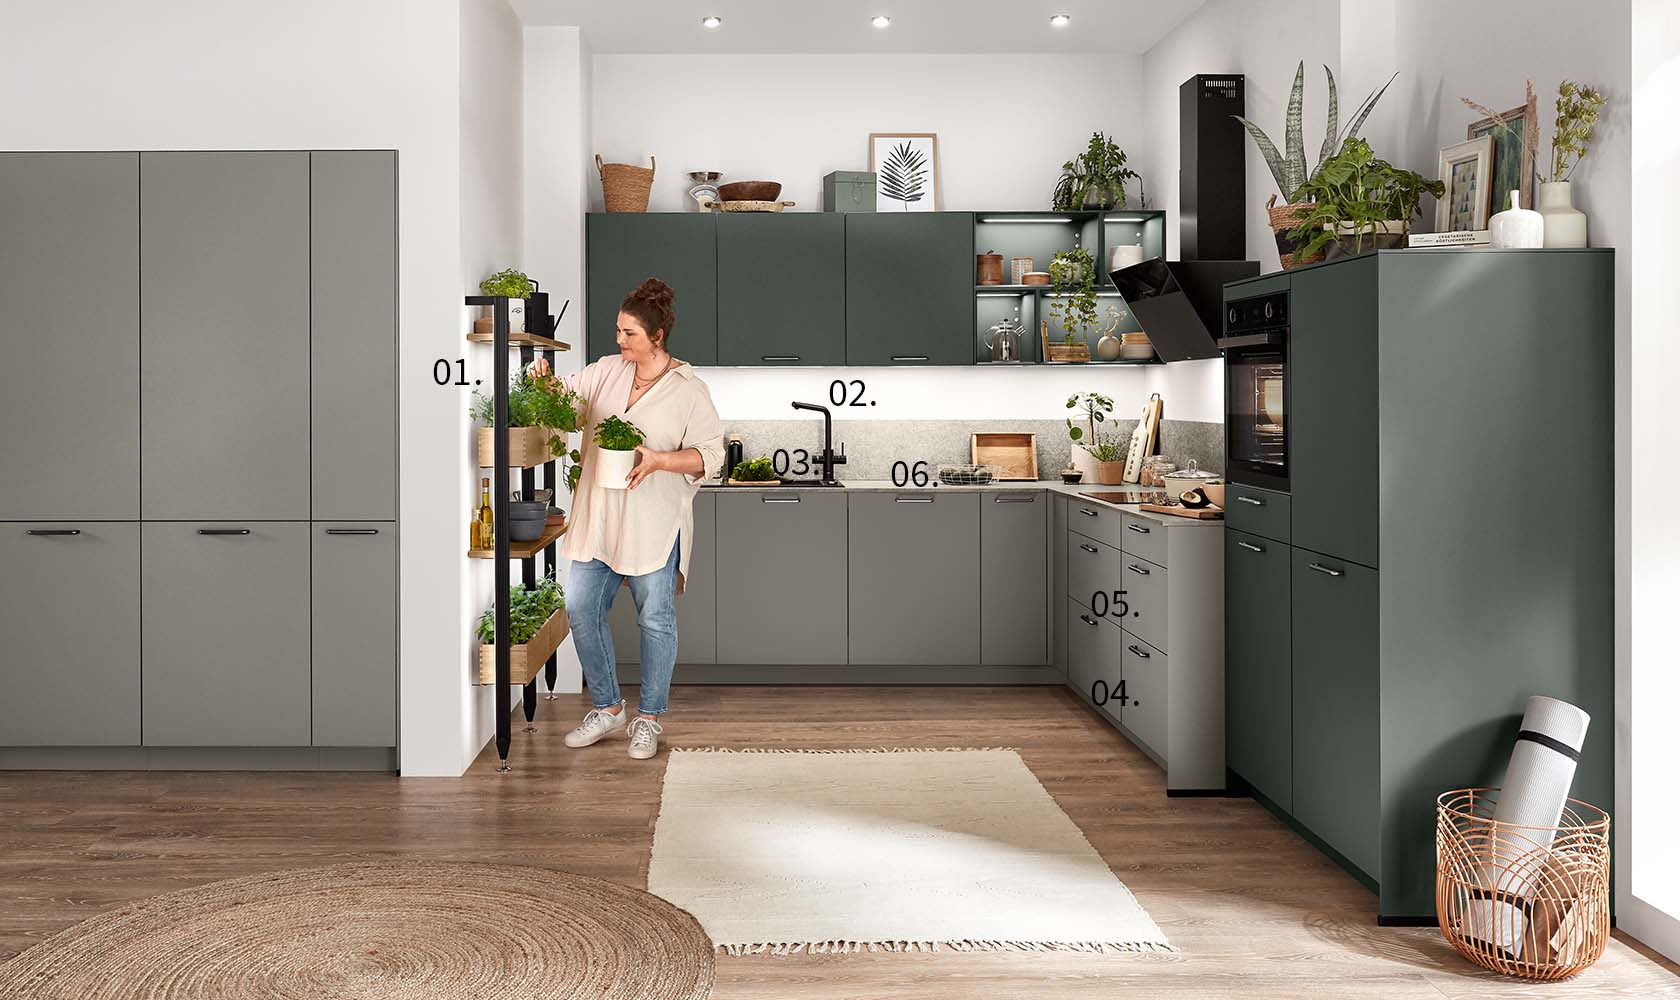 Una mujer está parada en una cocina moderna con indicadores numerados resaltando características como gabinetes, electrodomésticos y plantas decorativas.